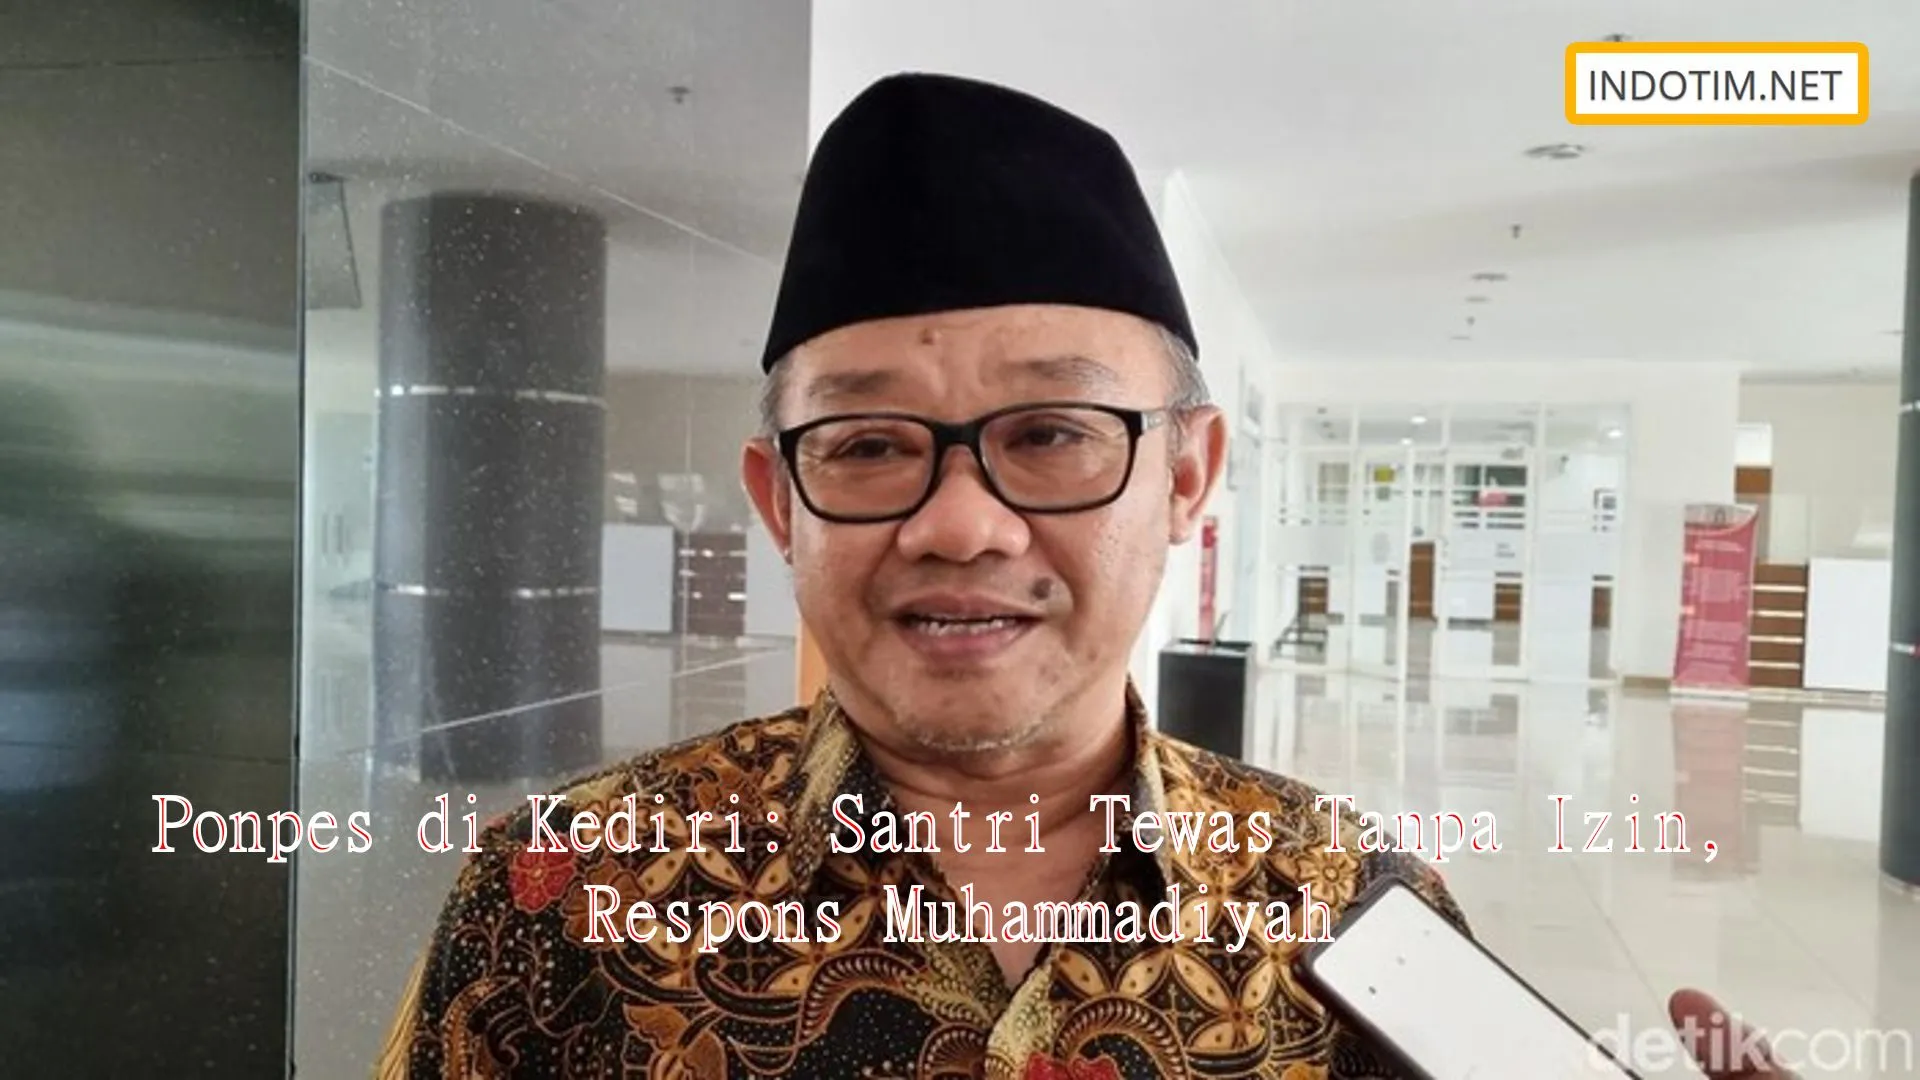 Ponpes di Kediri: Santri Tewas Tanpa Izin, Respons Muhammadiyah